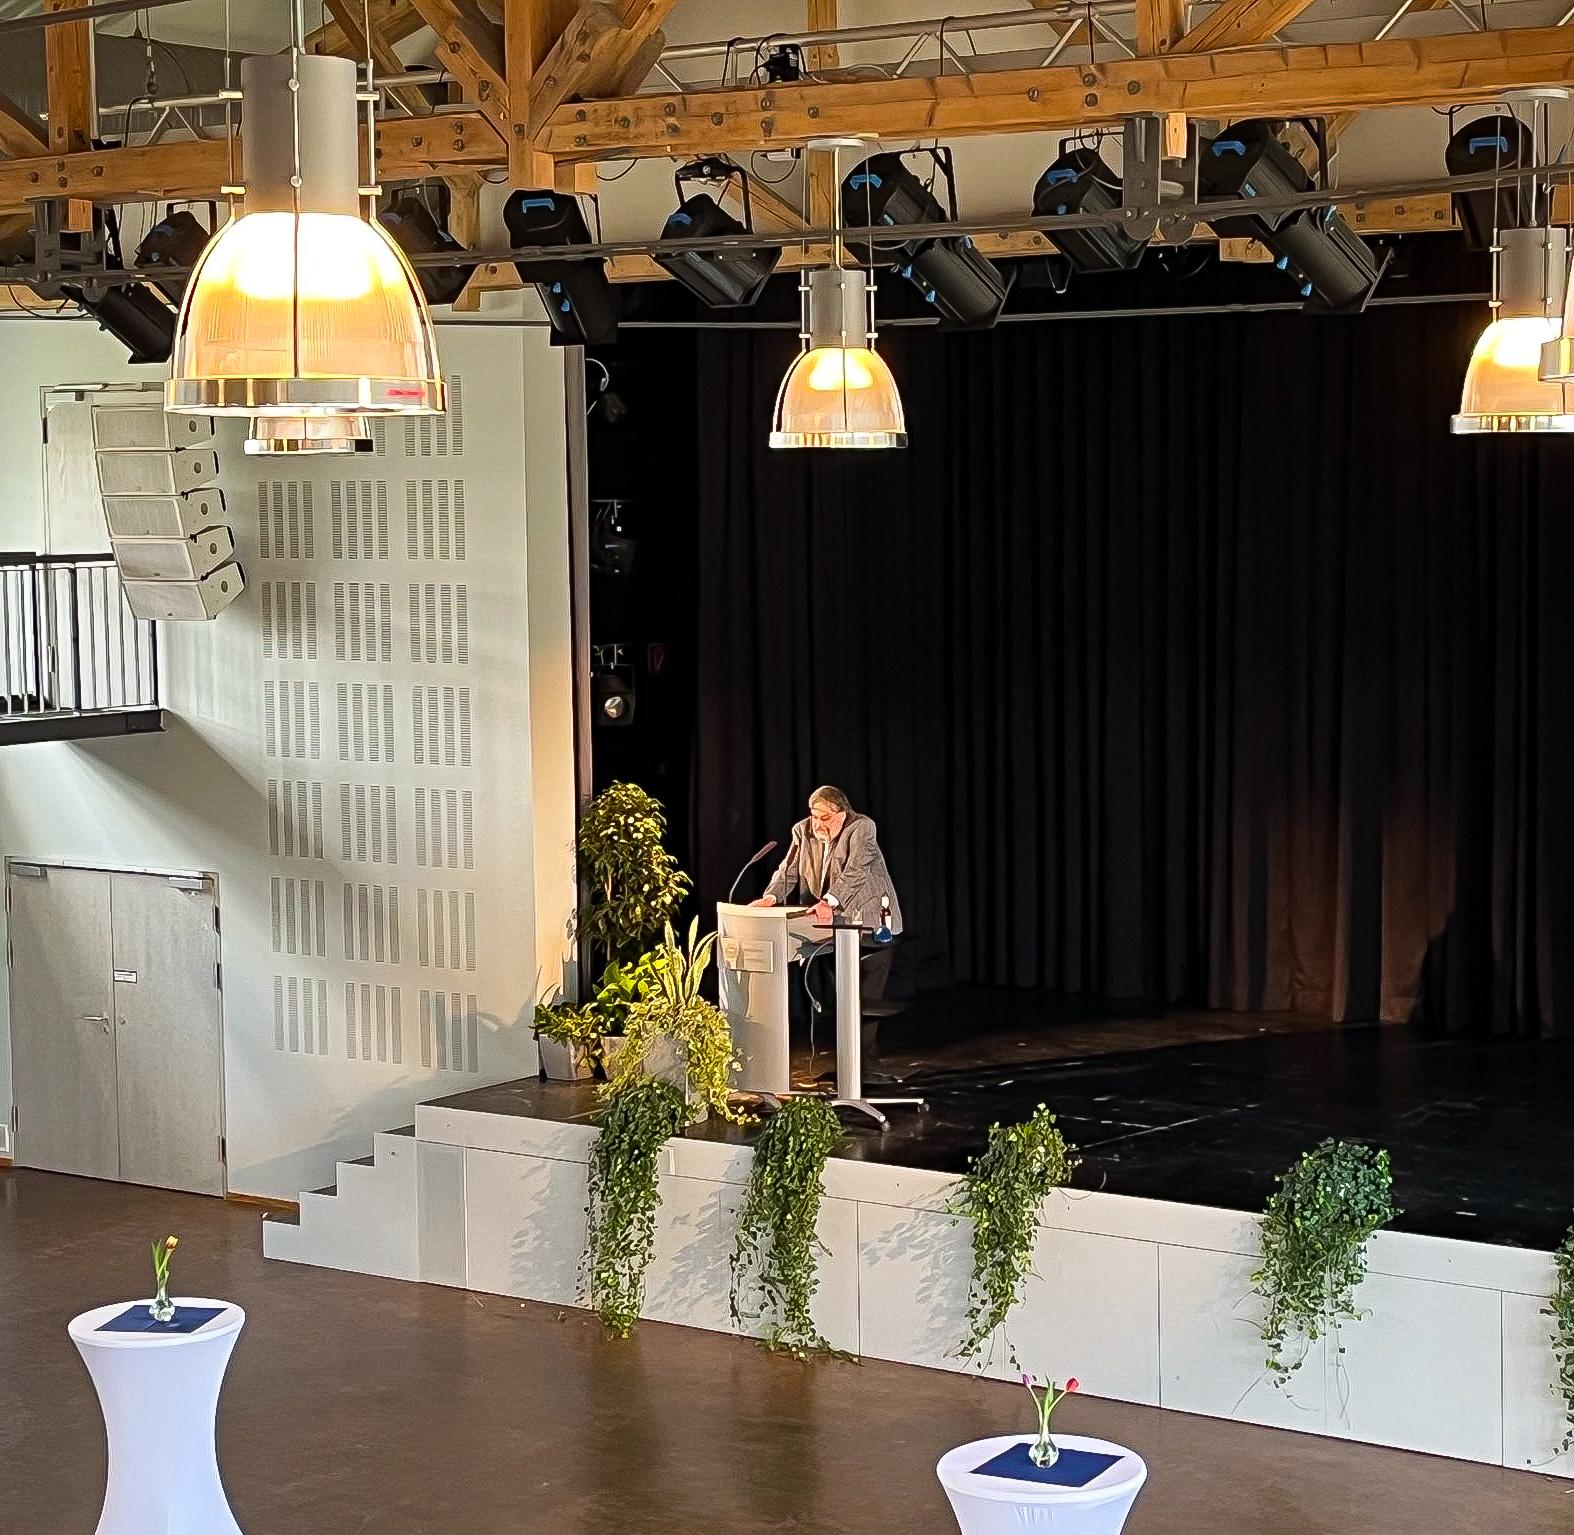 Prof. Stephan Weth spricht auf der Bühne der Aula der Universität des Saarlandes anlässlich der Feier zu seiner Emeritierung. Auf der Bühne stehen Grünpflanzen. Vor der Bühne stehen Stehtische.